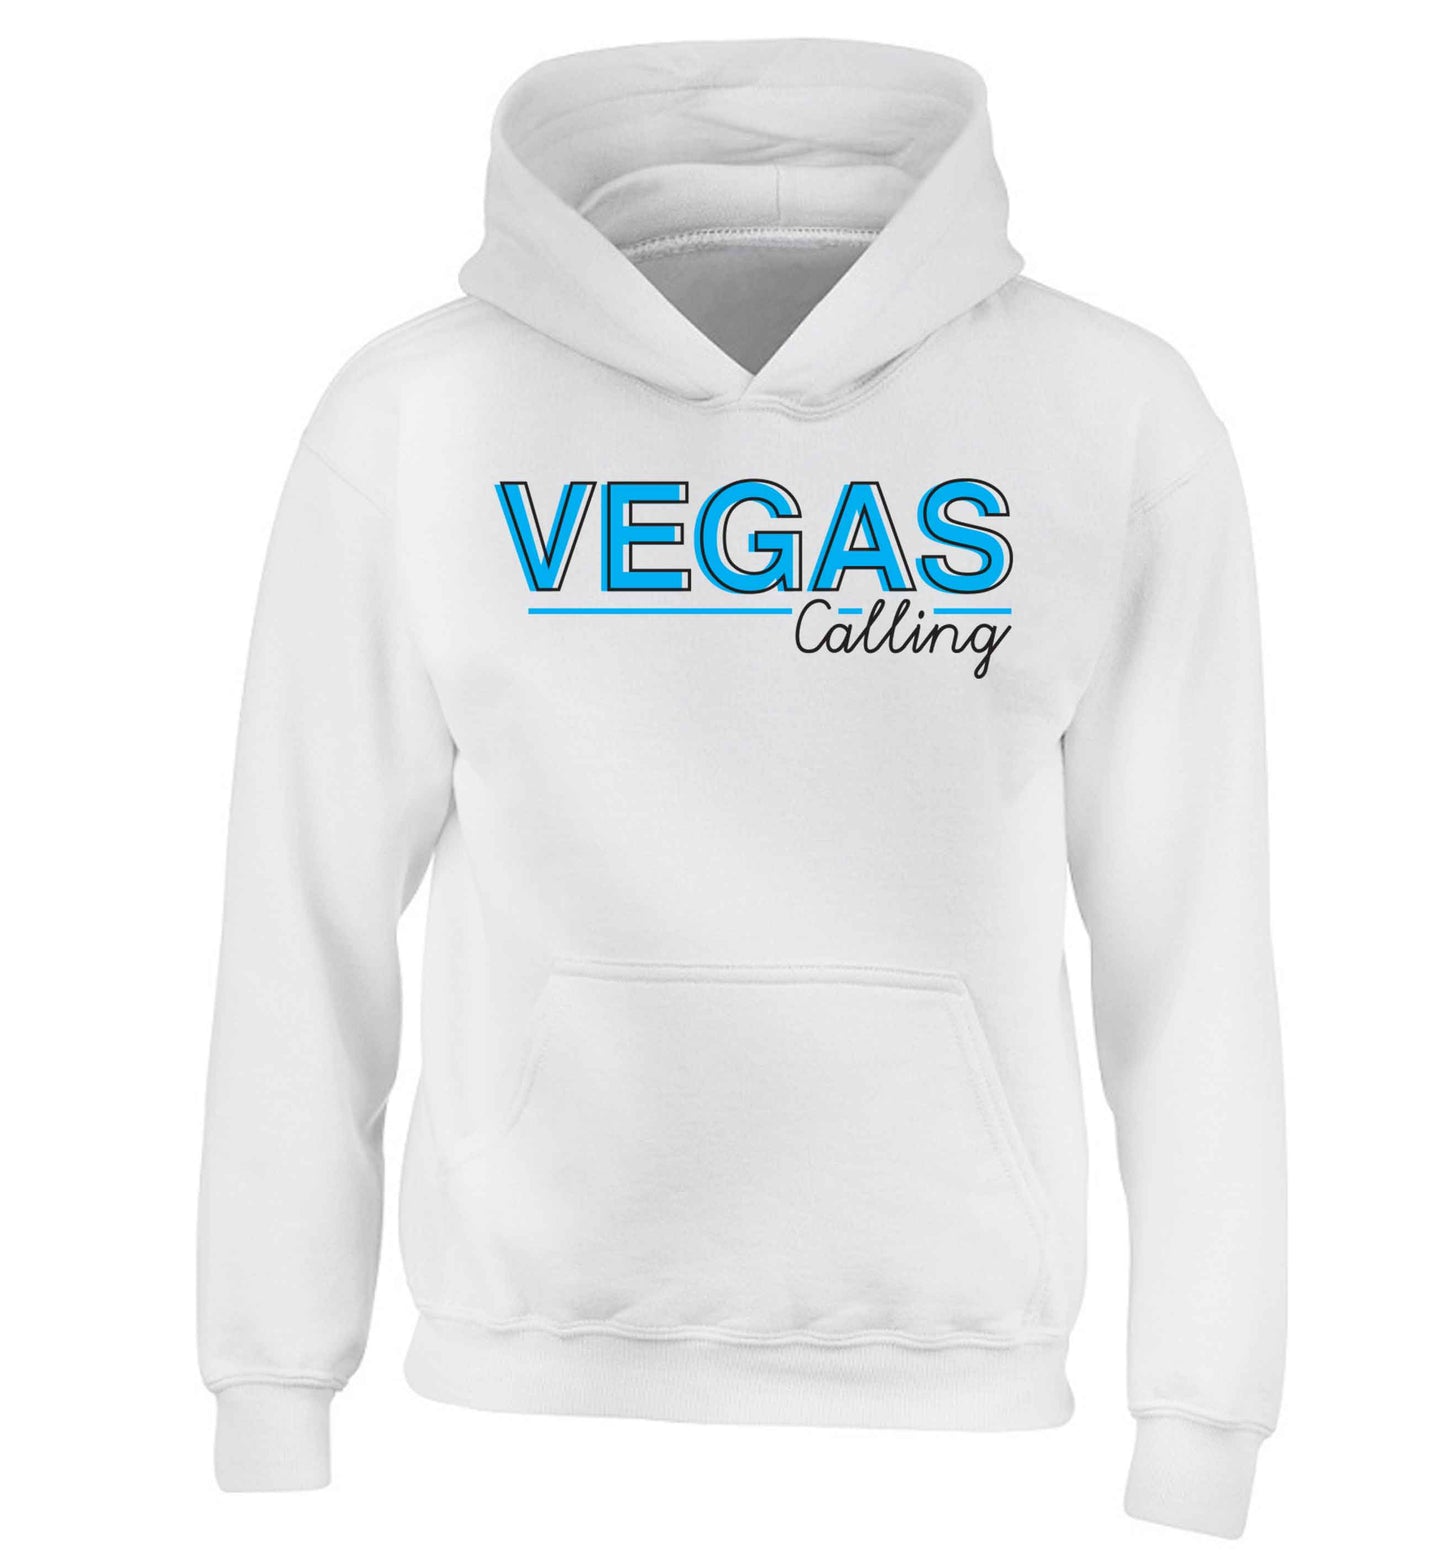 Vegas calling children's white hoodie 12-13 Years